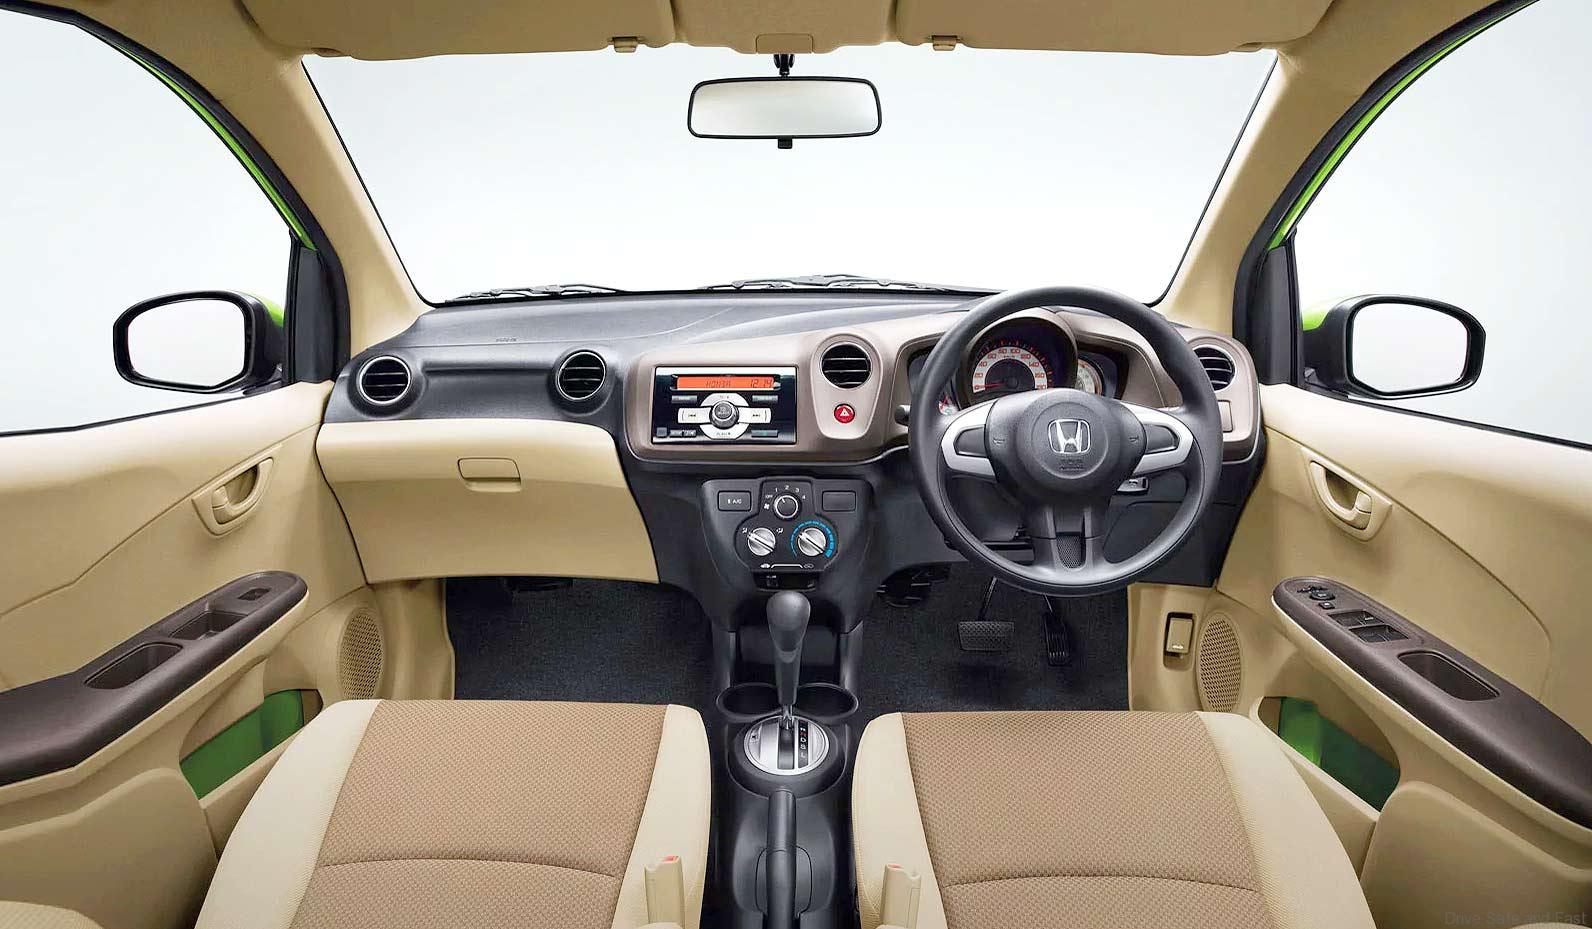 Trải nghiệm Honda Brio RS  Chiếc hatchback không gian A cách âm tốt  Xetinhtevn   YouTube